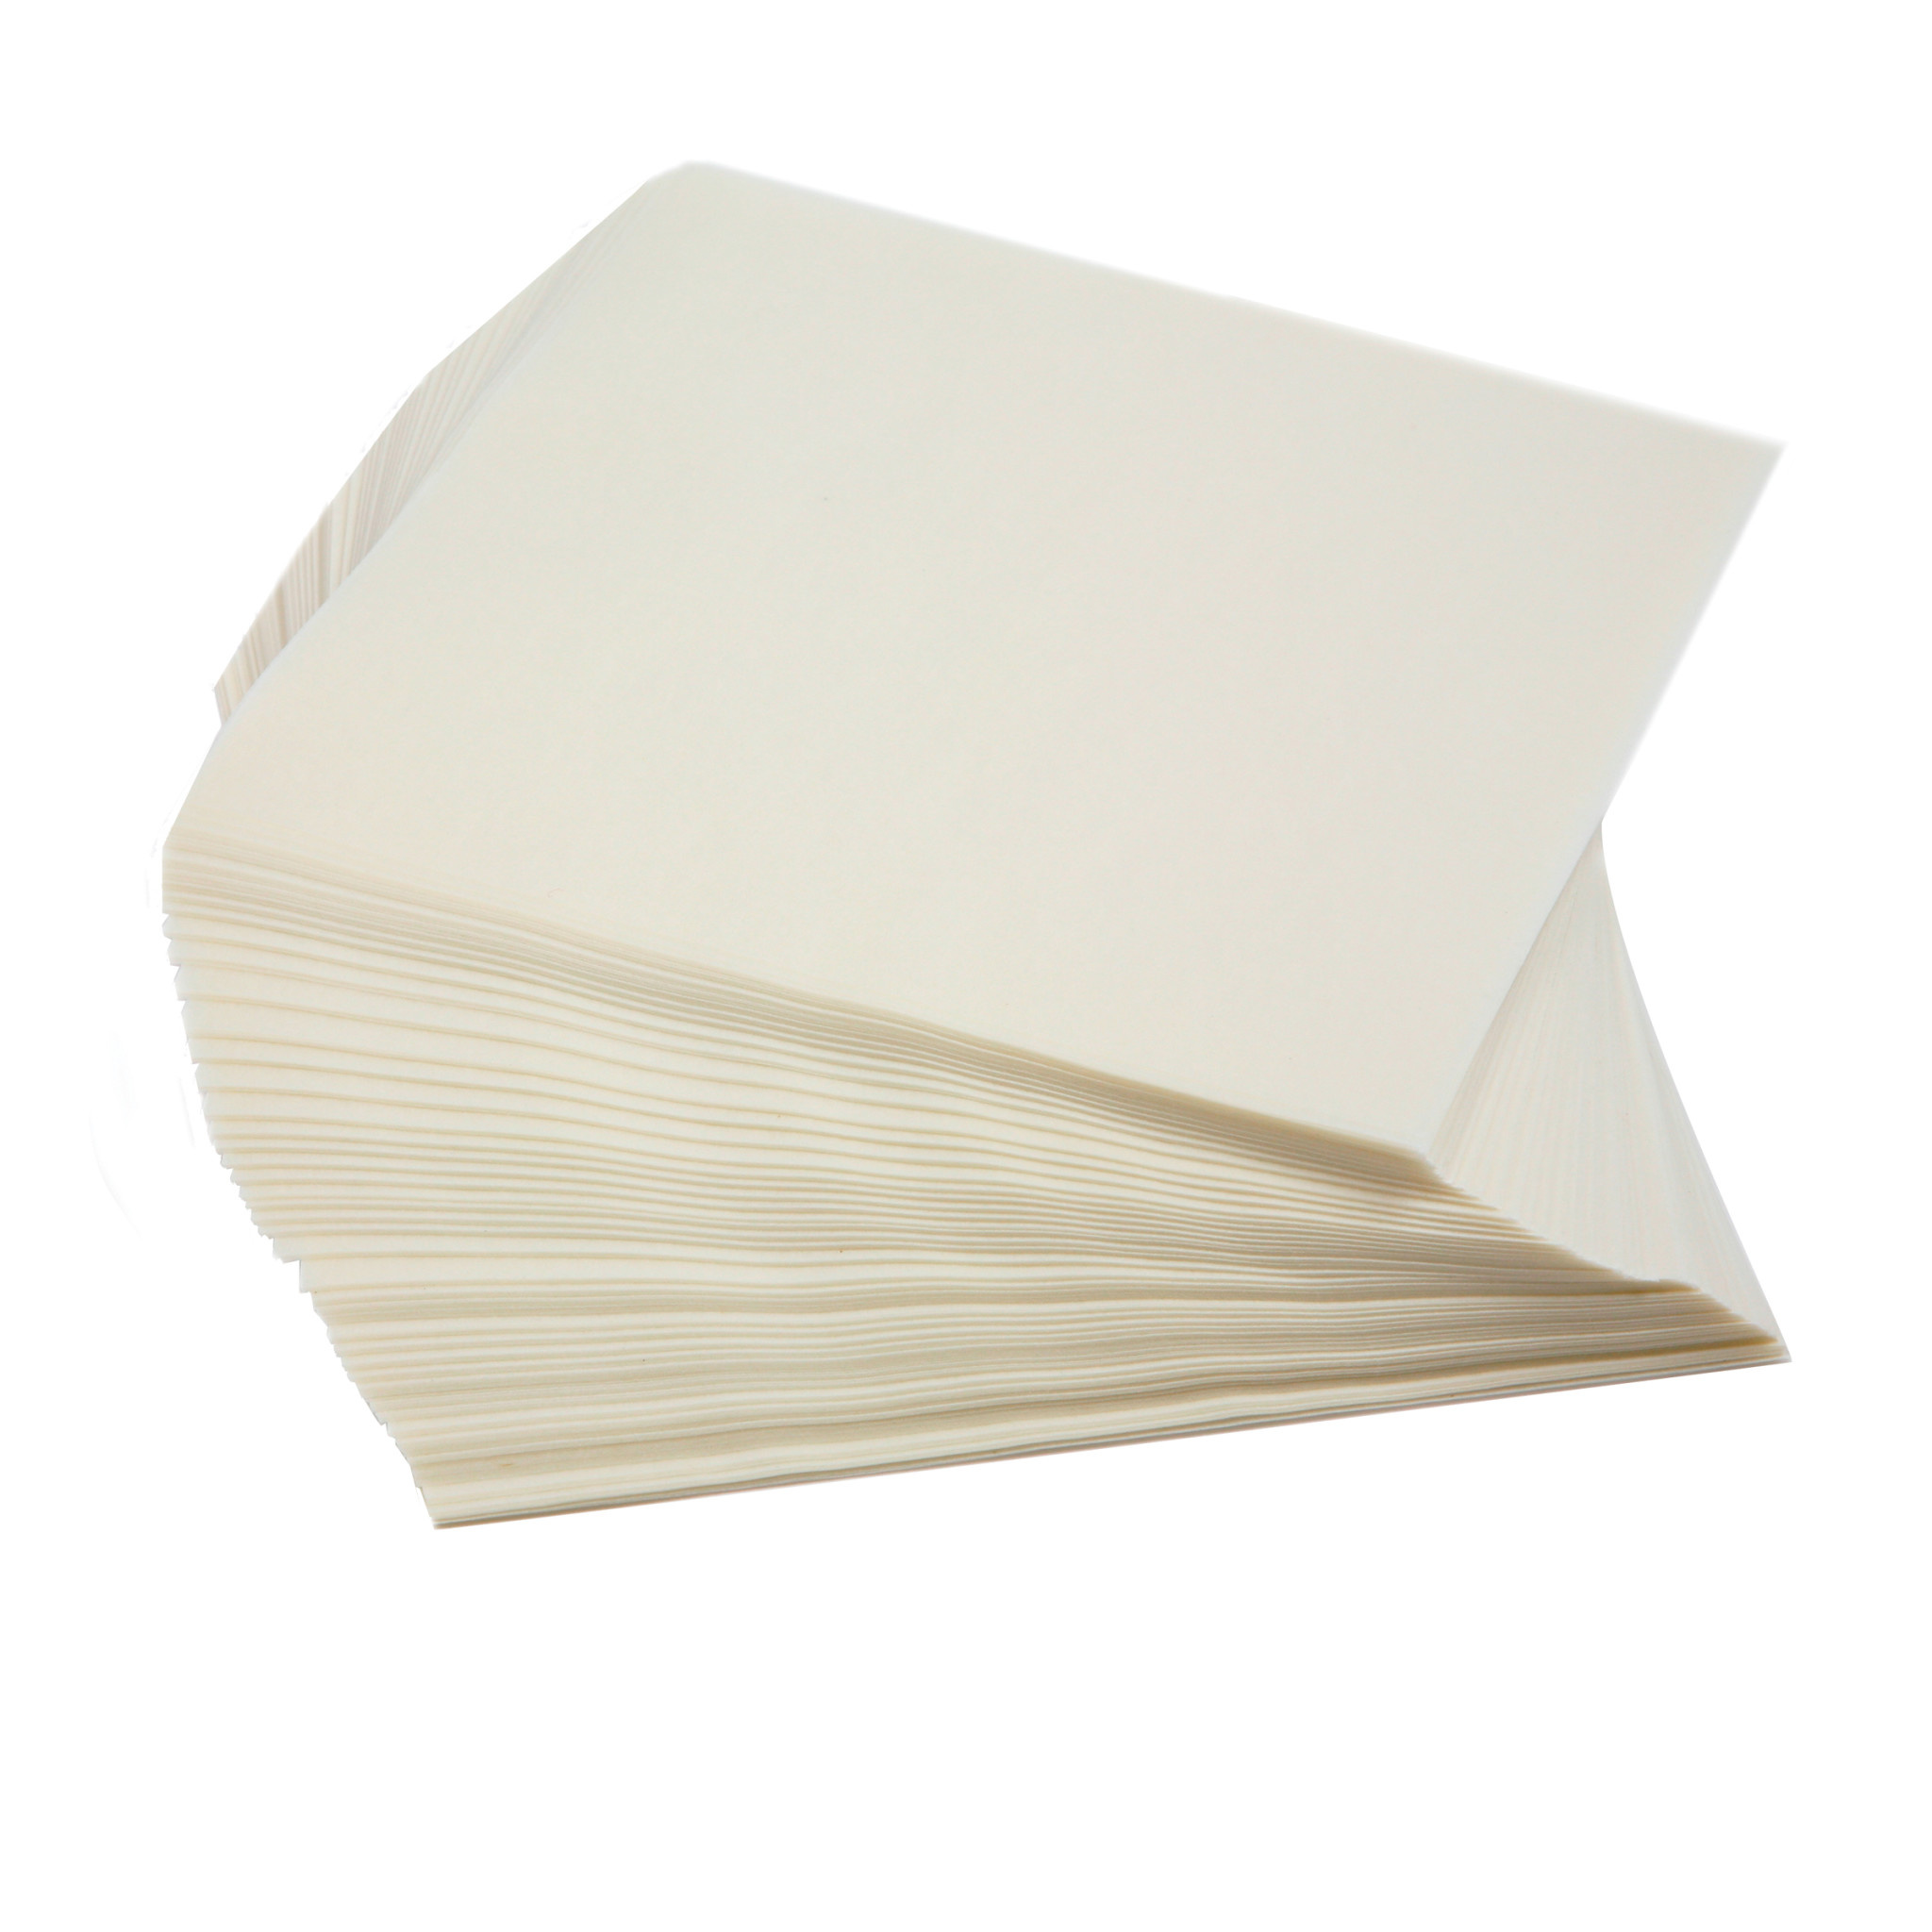 Бумага из риса. Рисовая бумага квадратная. Пищевая бумага. Лист рисовой бумаги. Рисовая бумага тонкая.